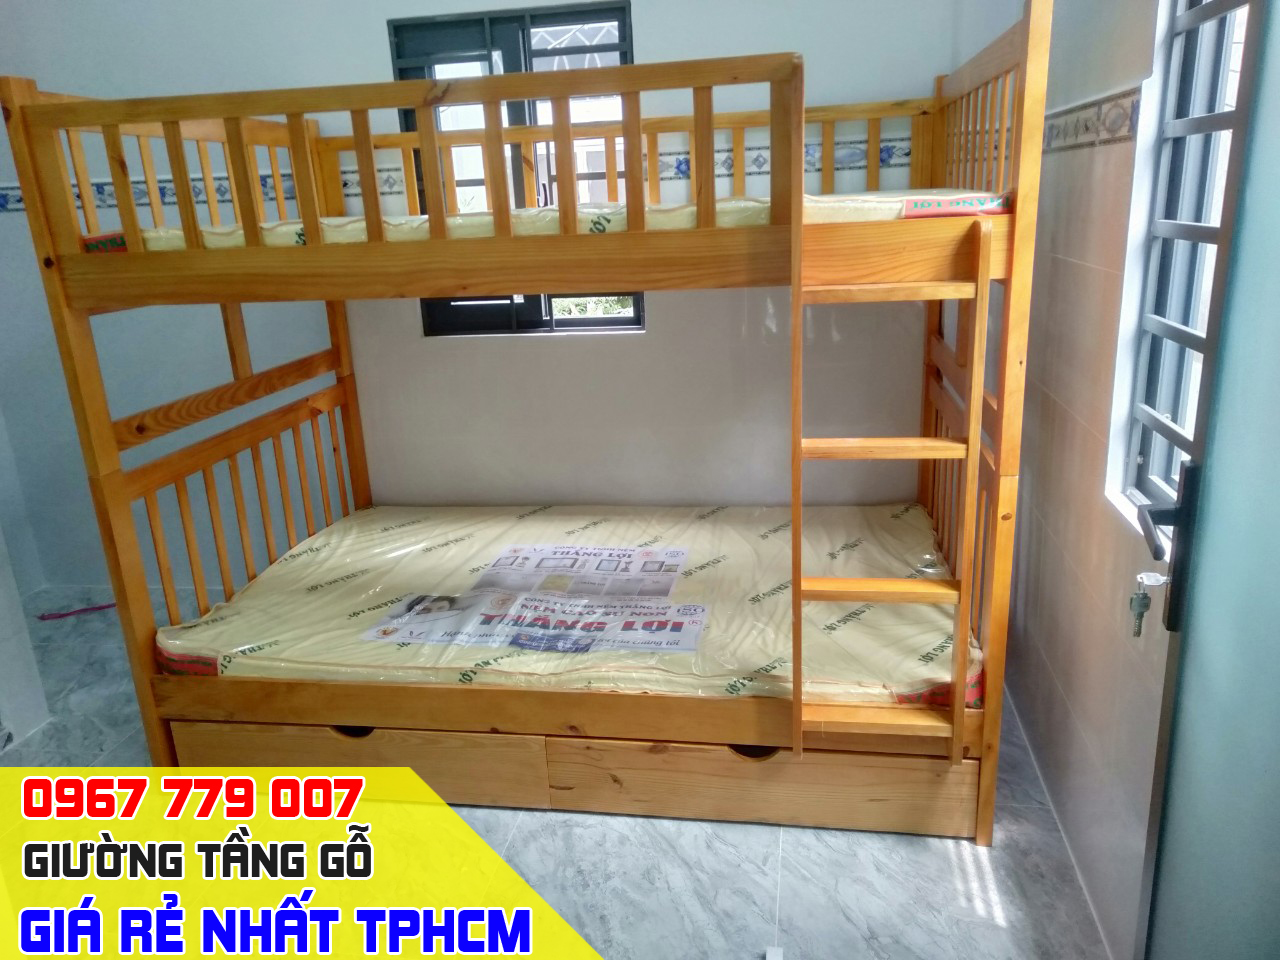 CH bán giường tầng trẻ em giá rẻ uy tín nhất Quận Gò Vấp TPHCM 9